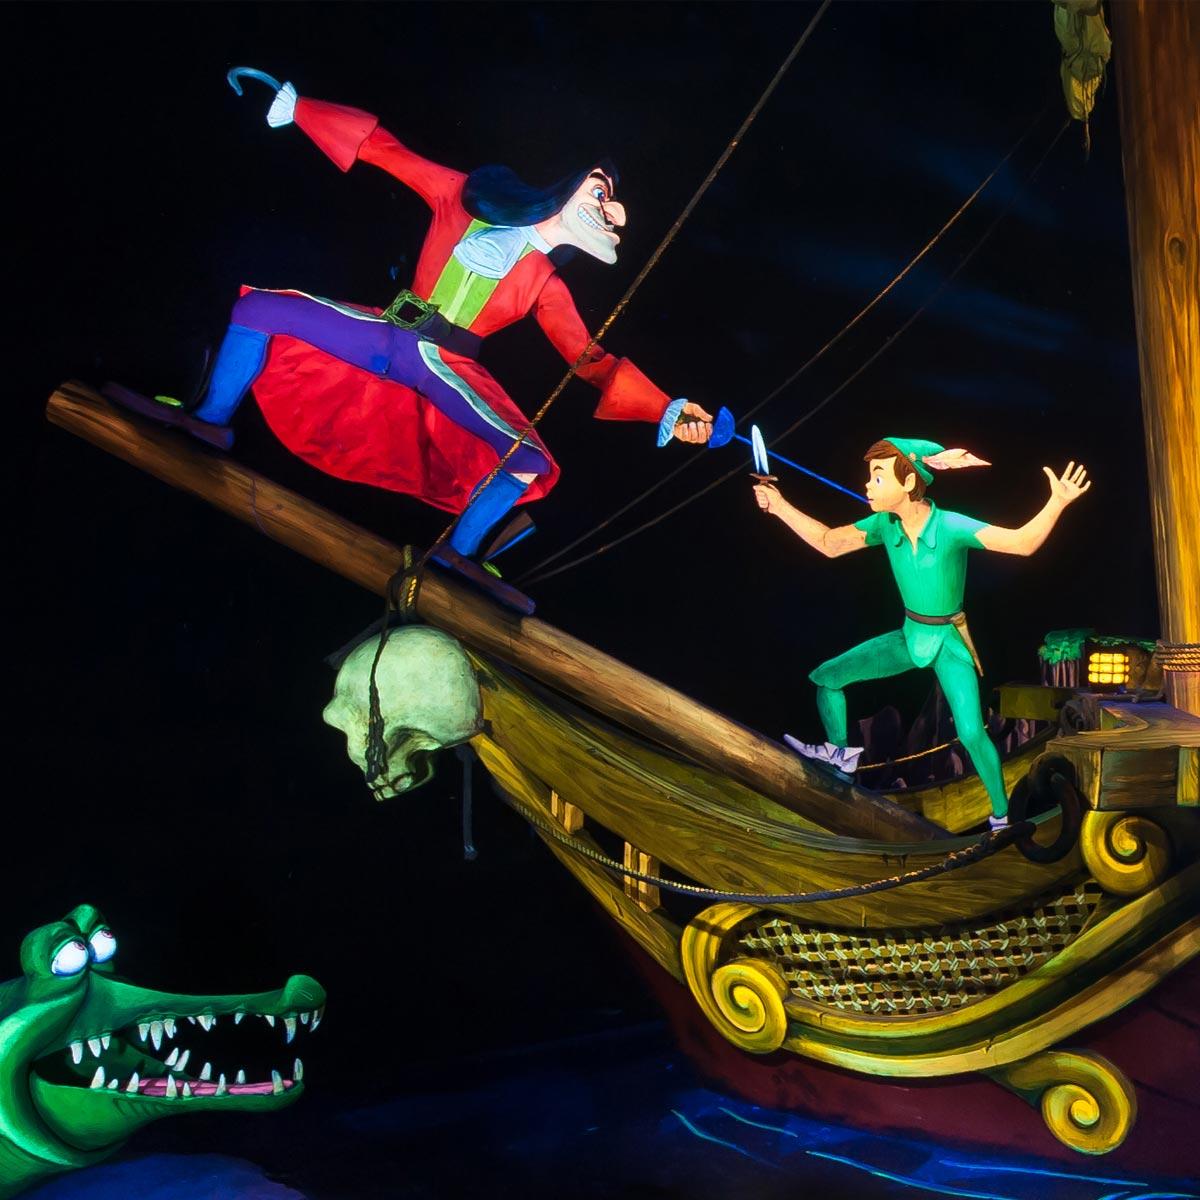 Peter Pan's Flight, Attractions